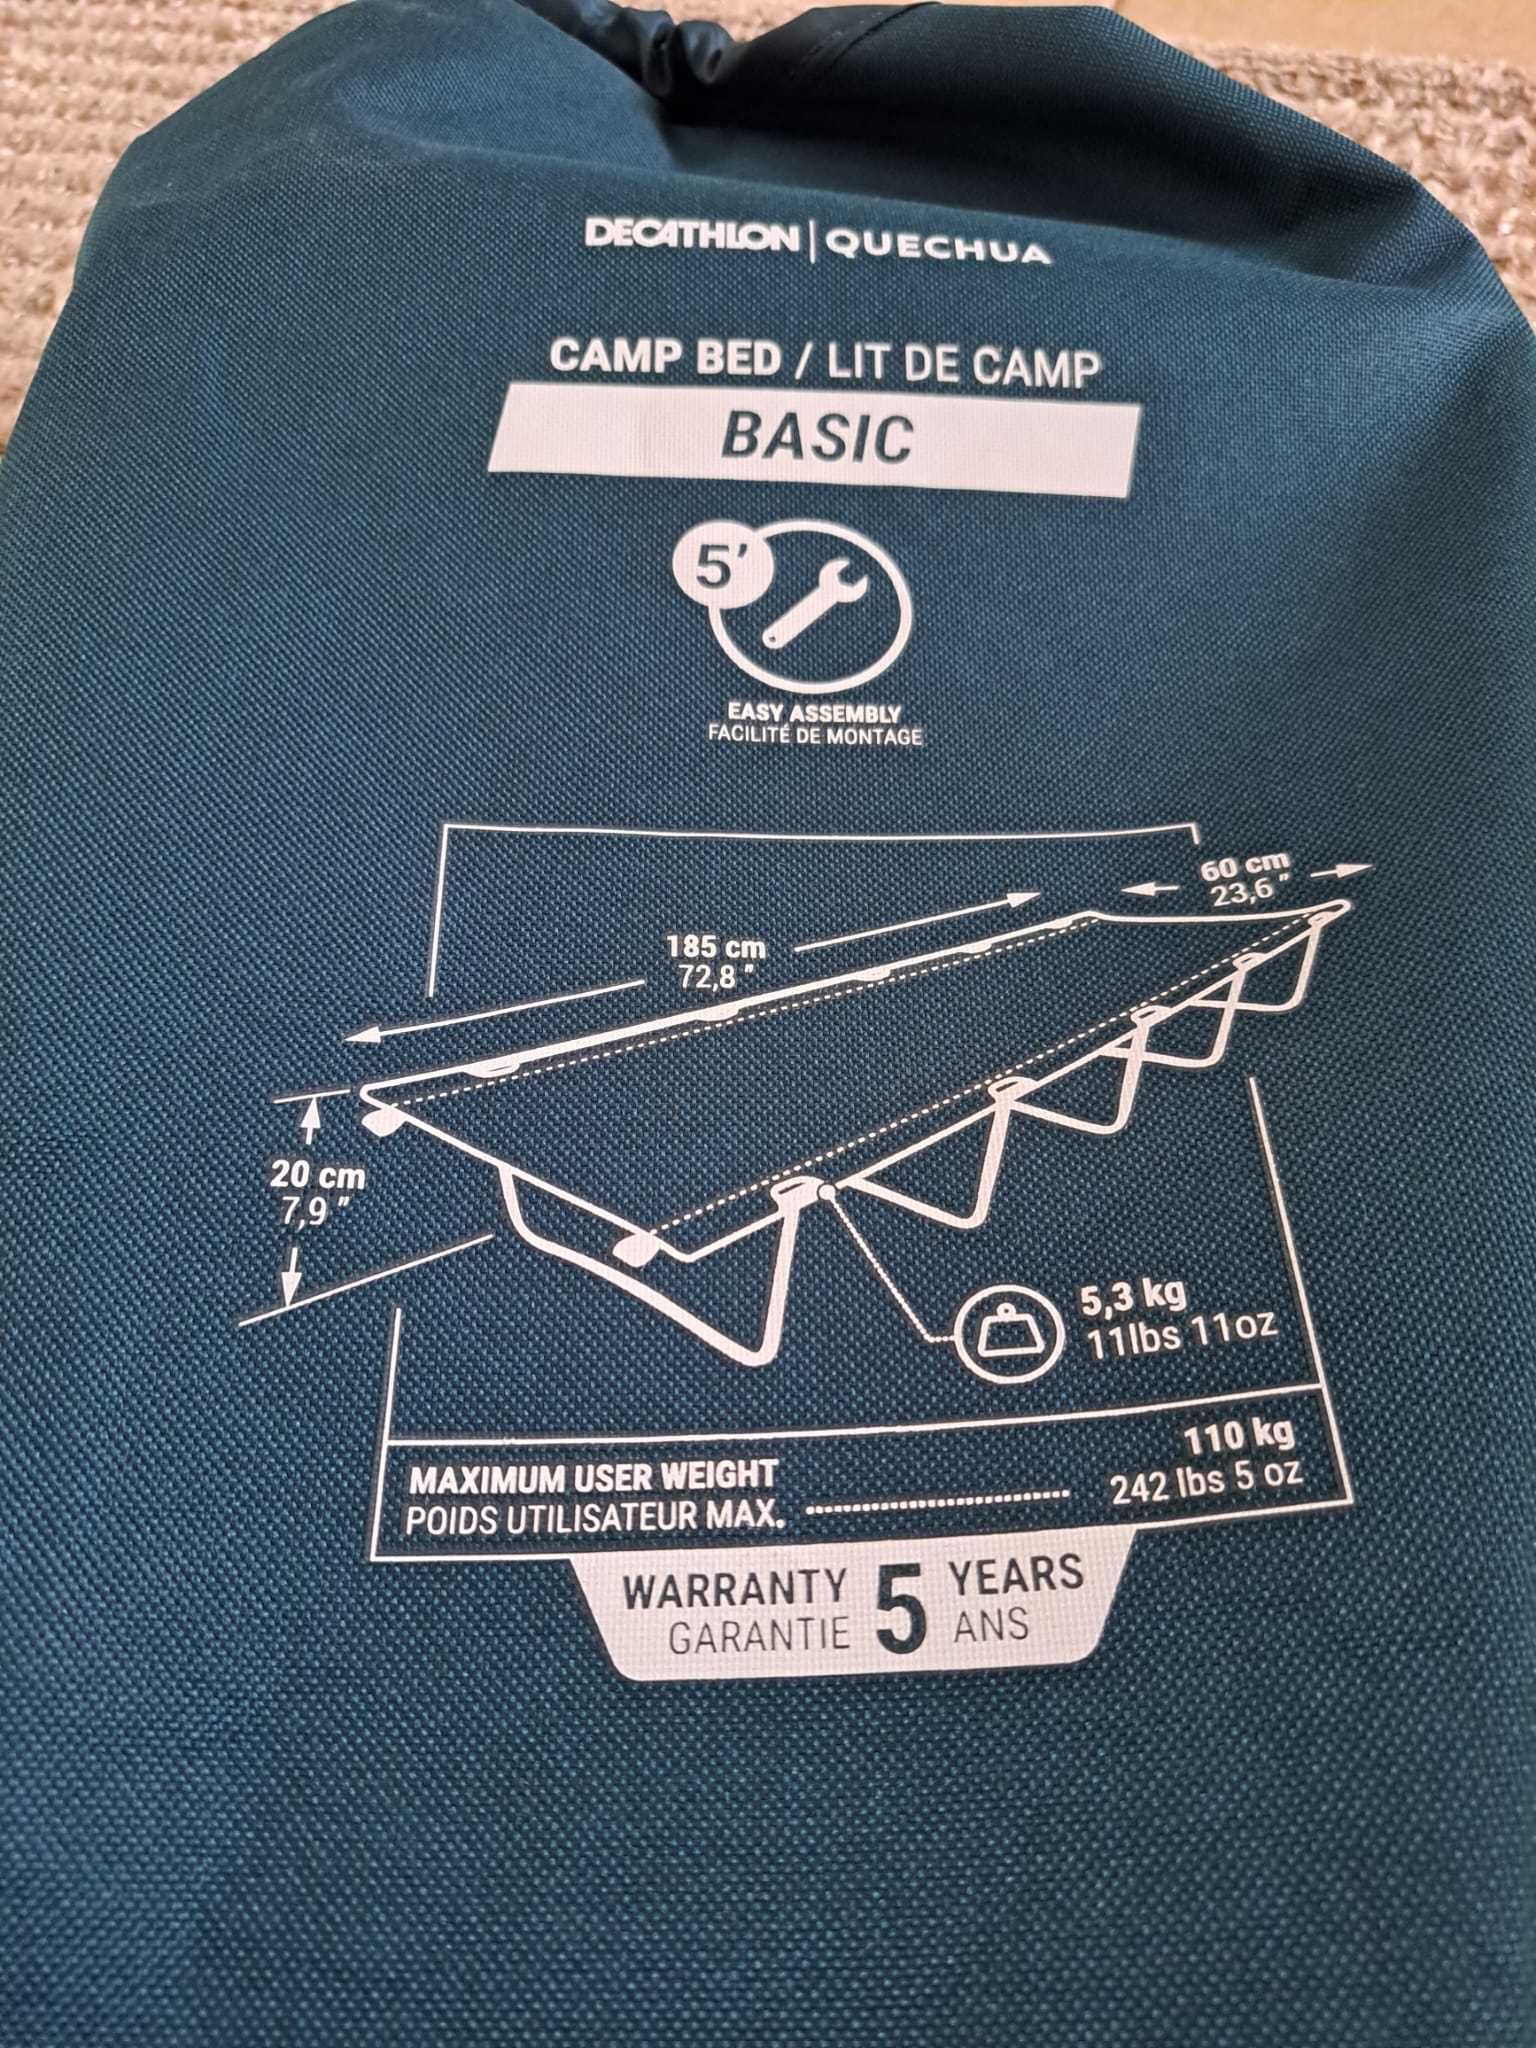 Cama de Campismo CAMP BED BASIC 60 CM - 1 pessoa